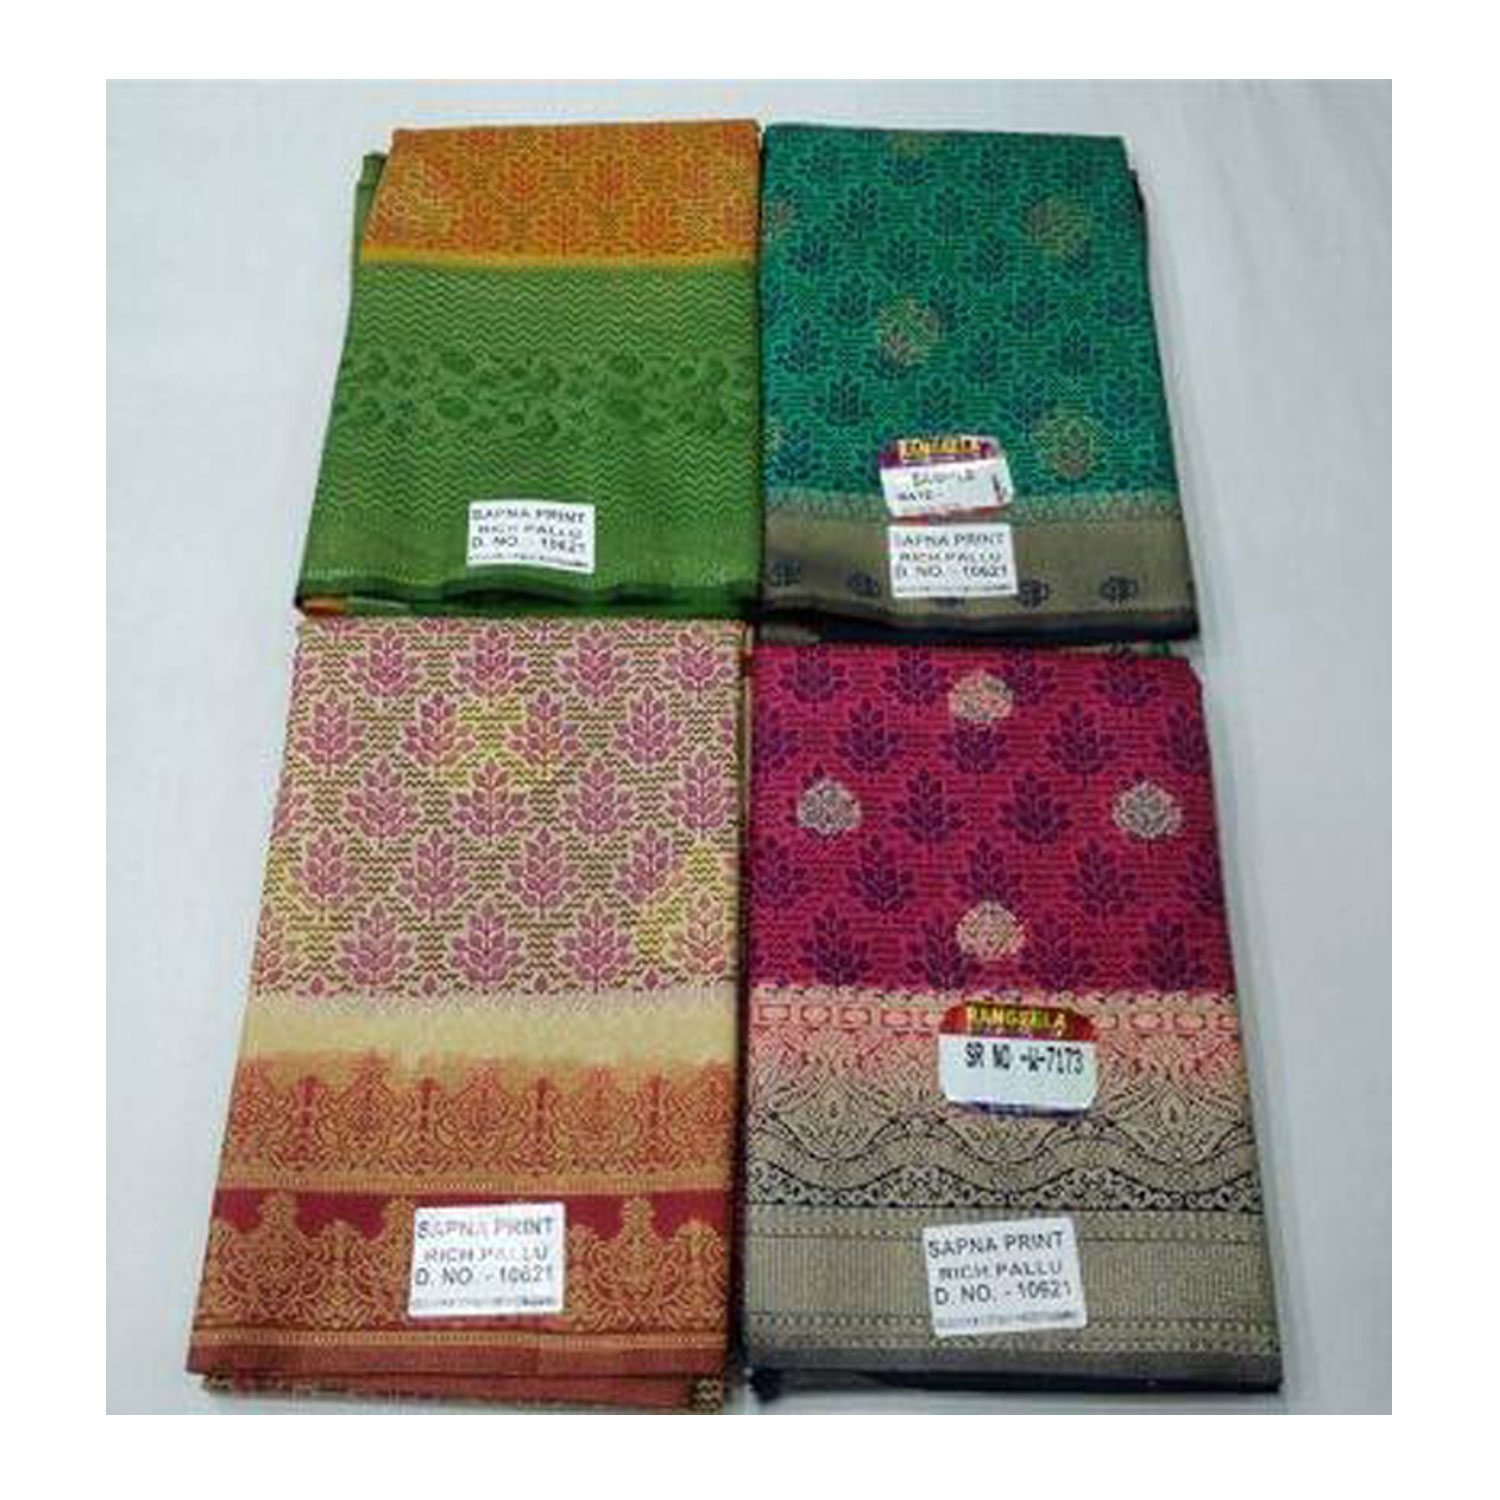  Women's Silk Cotton Weaving Work Sapna Print Saree |D.NO - W-7173| Pack of 4